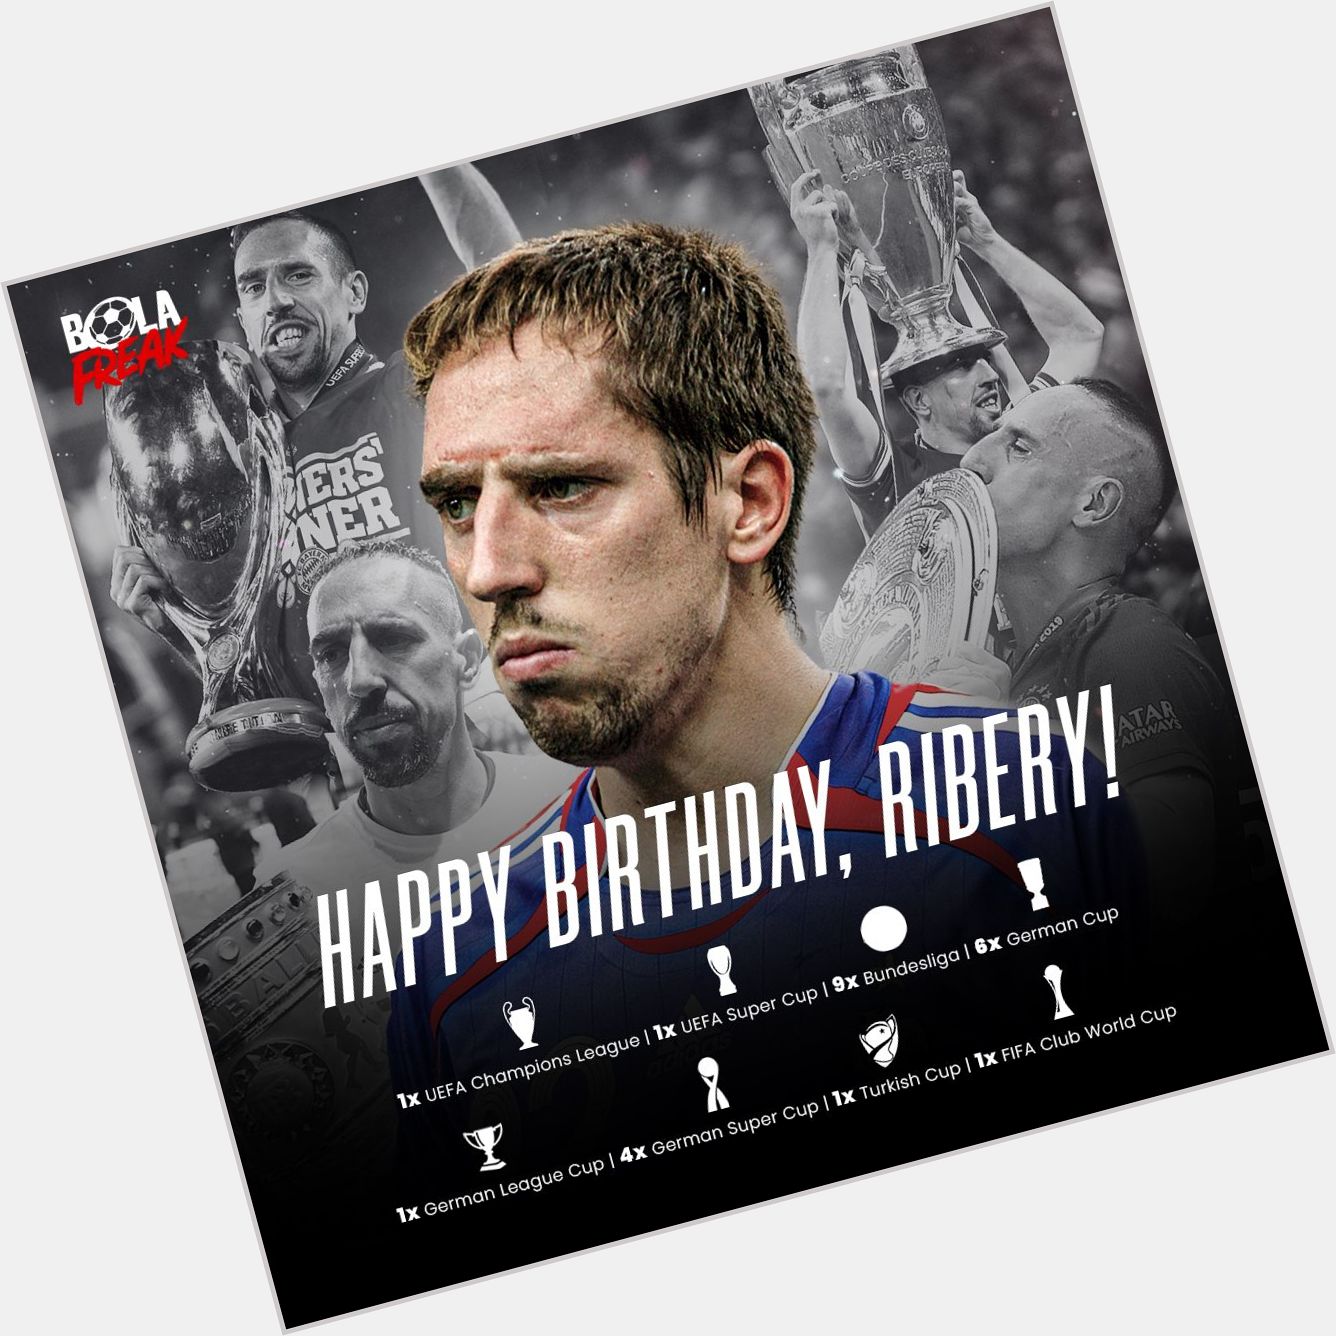 Hari ini Franck Ribery genap berusia 38 tahun. Happy birthday! 